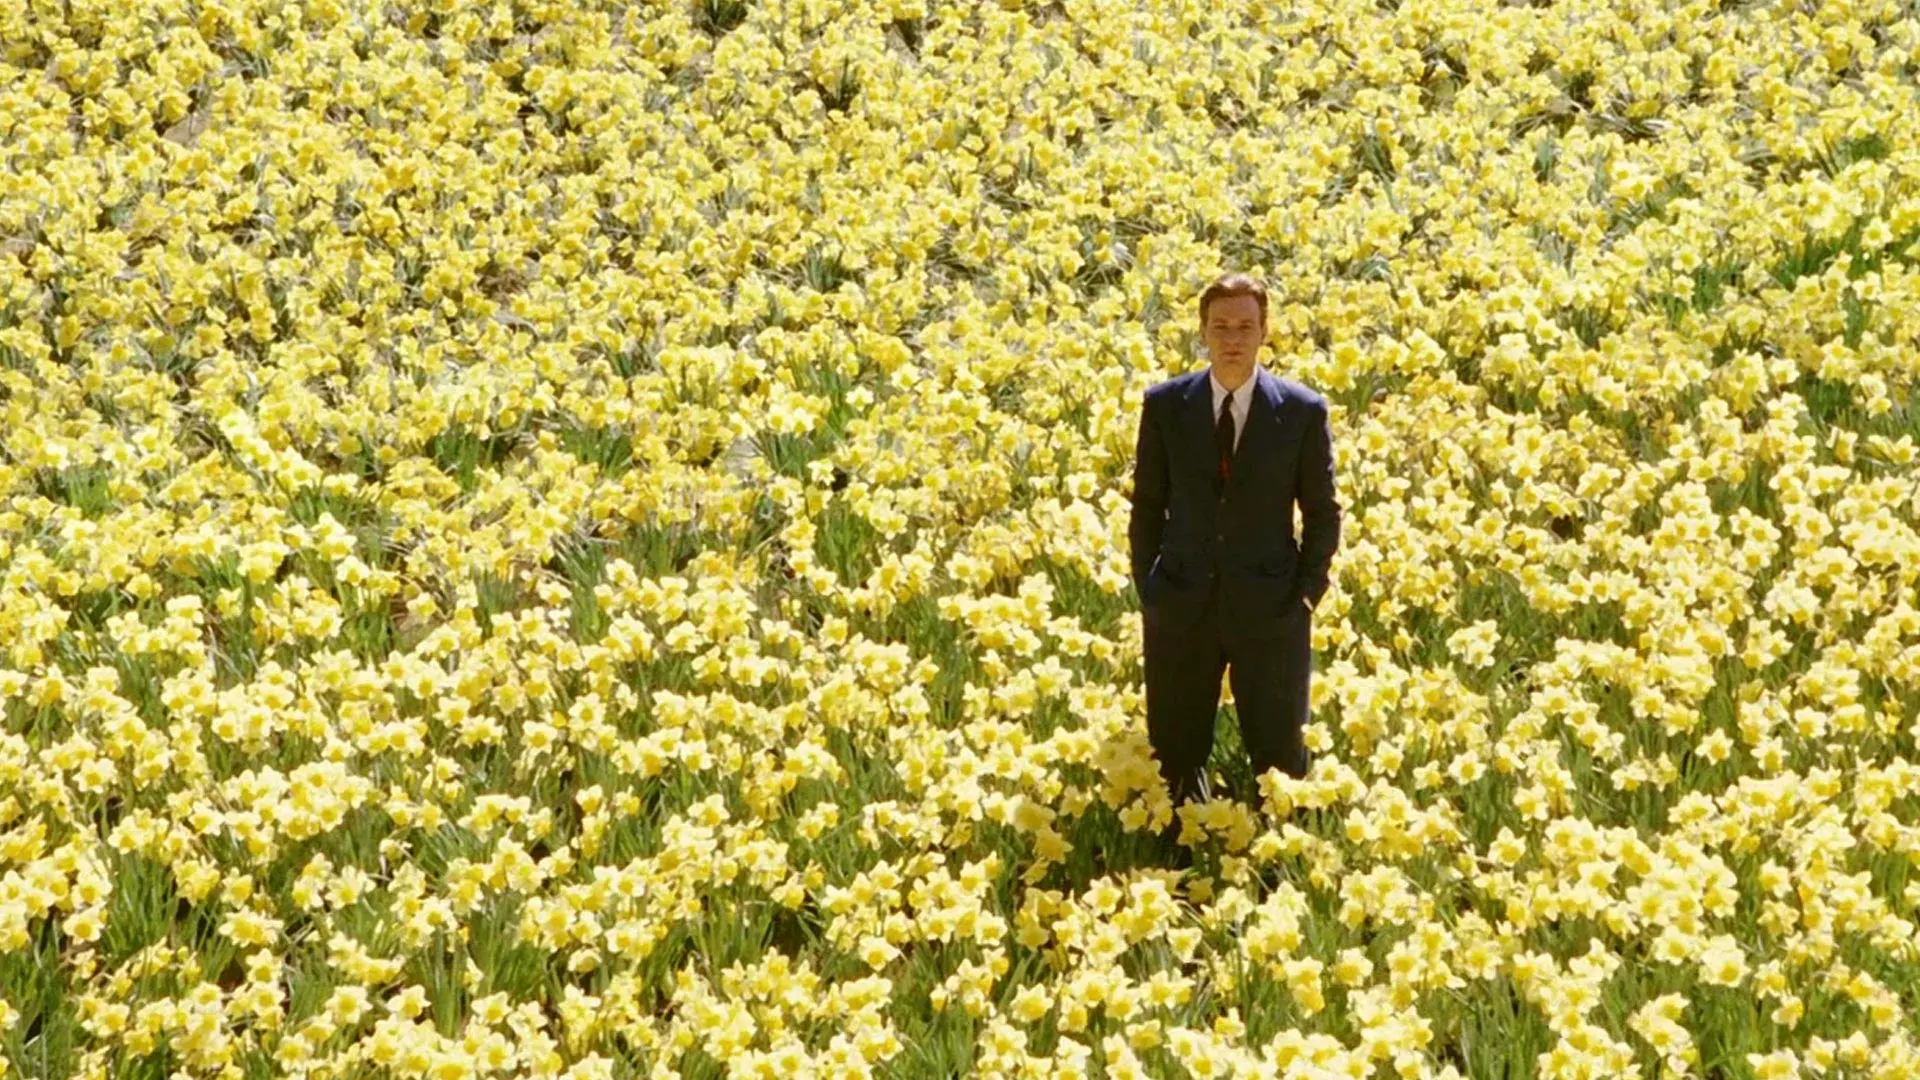 ایوان مک گرگور در نقش ادوارد بلوم در میان دشتی از گلهای زرد در فیلم ماهی بزرگ